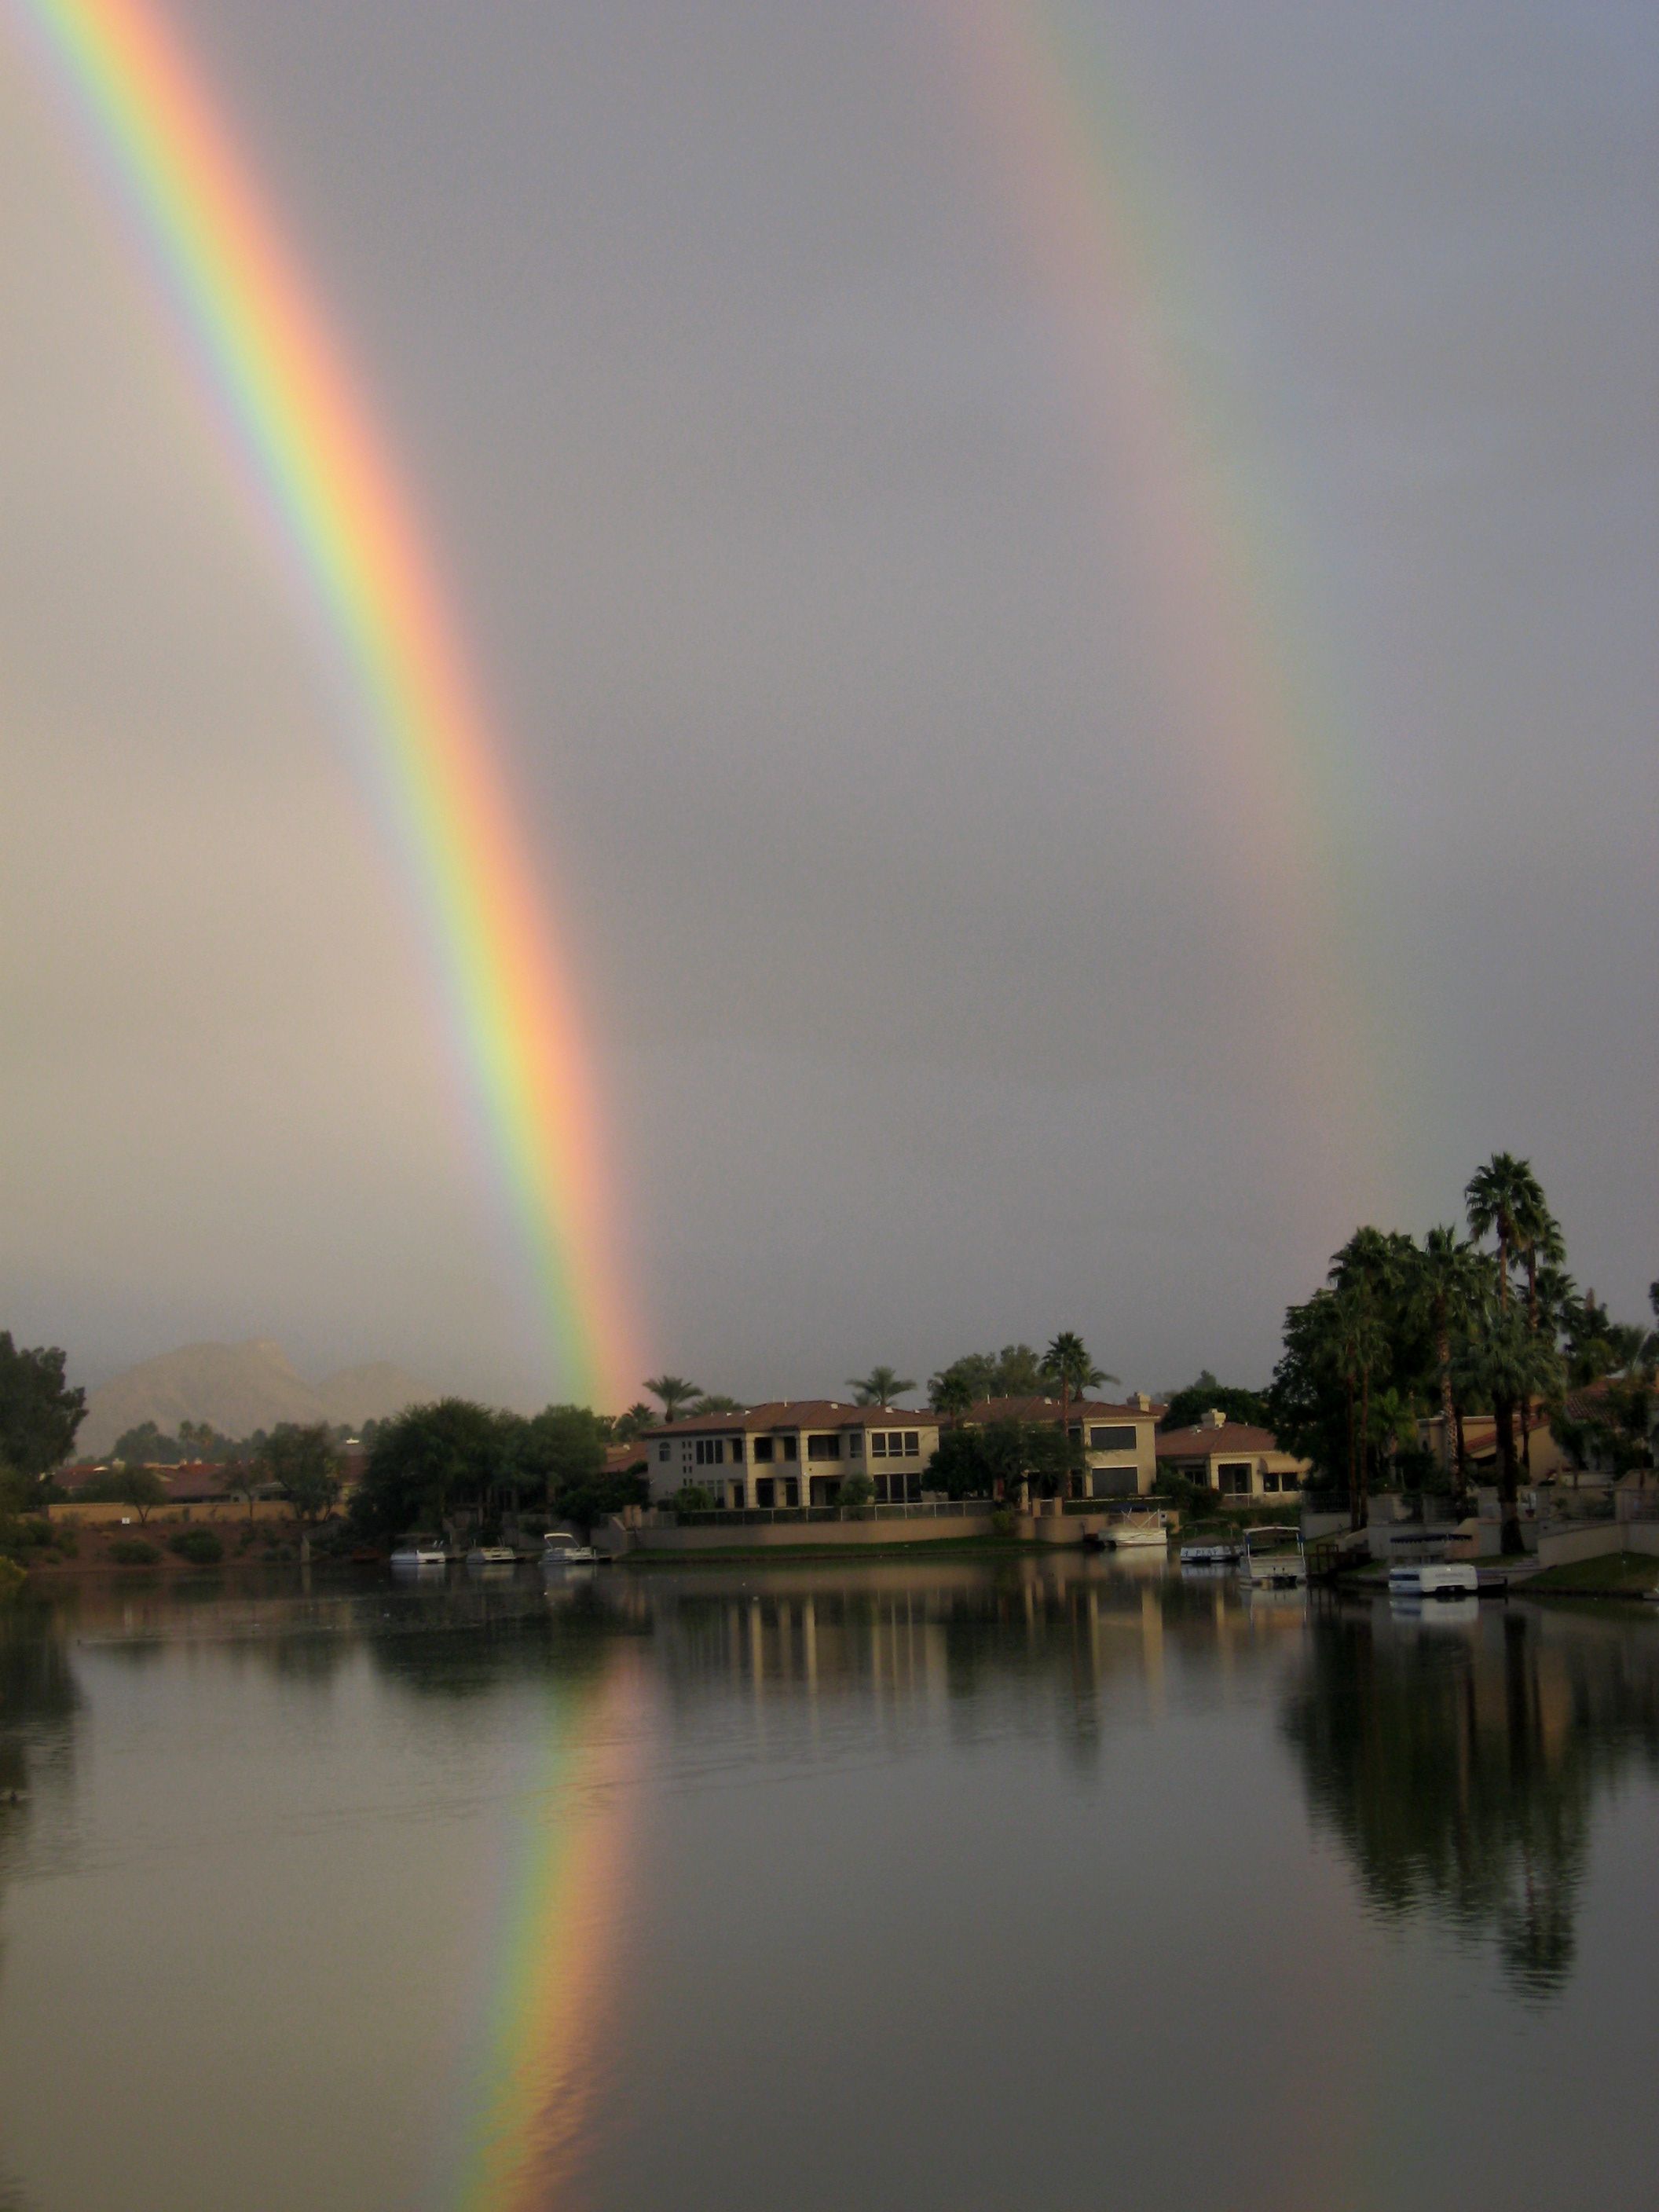 Joe Dobrow photo of a double rainbow in Scottsdale, Arizona